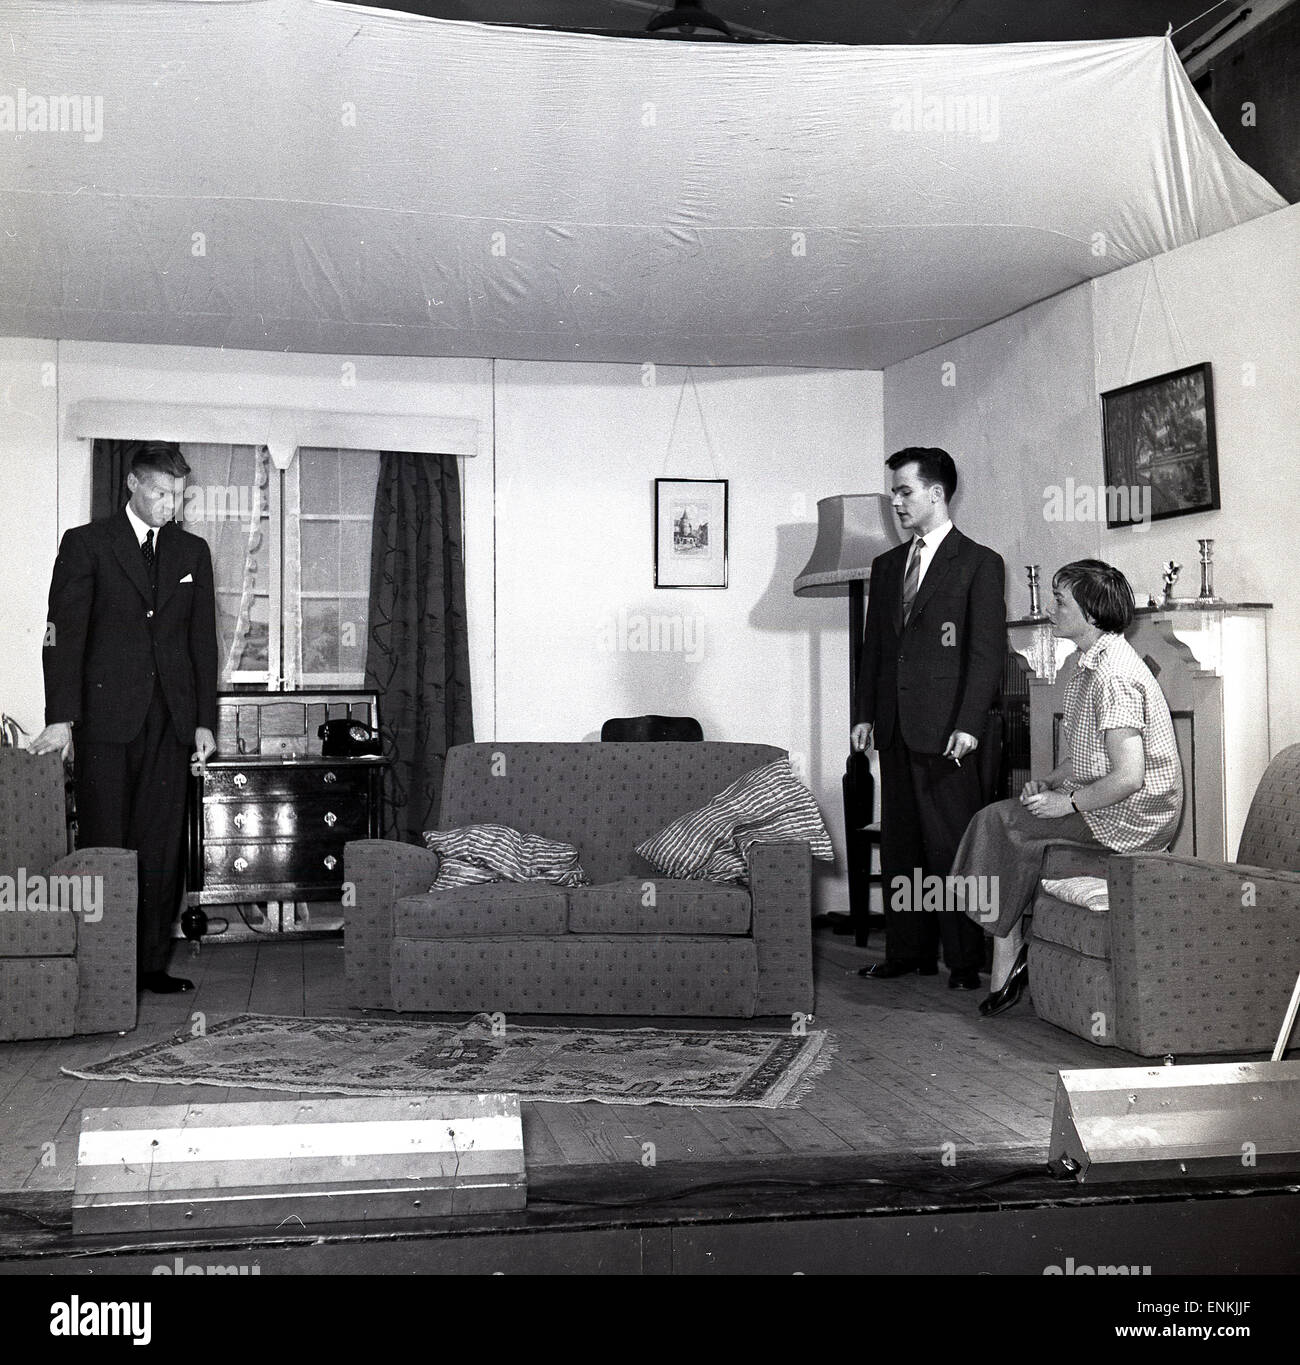 Historique, 1950, dramatics amateurs, trois acteurs, deux hommes et femmes sur scène agissant dans un ensemble d'un salon dans une maison, Angleterre, Royaume-Uni. Dans les jours qui ont précédé la télévision, le théâtre amateur était une activité populaire dans les communautés, en particulier pour ses aspects sociaux. Banque D'Images